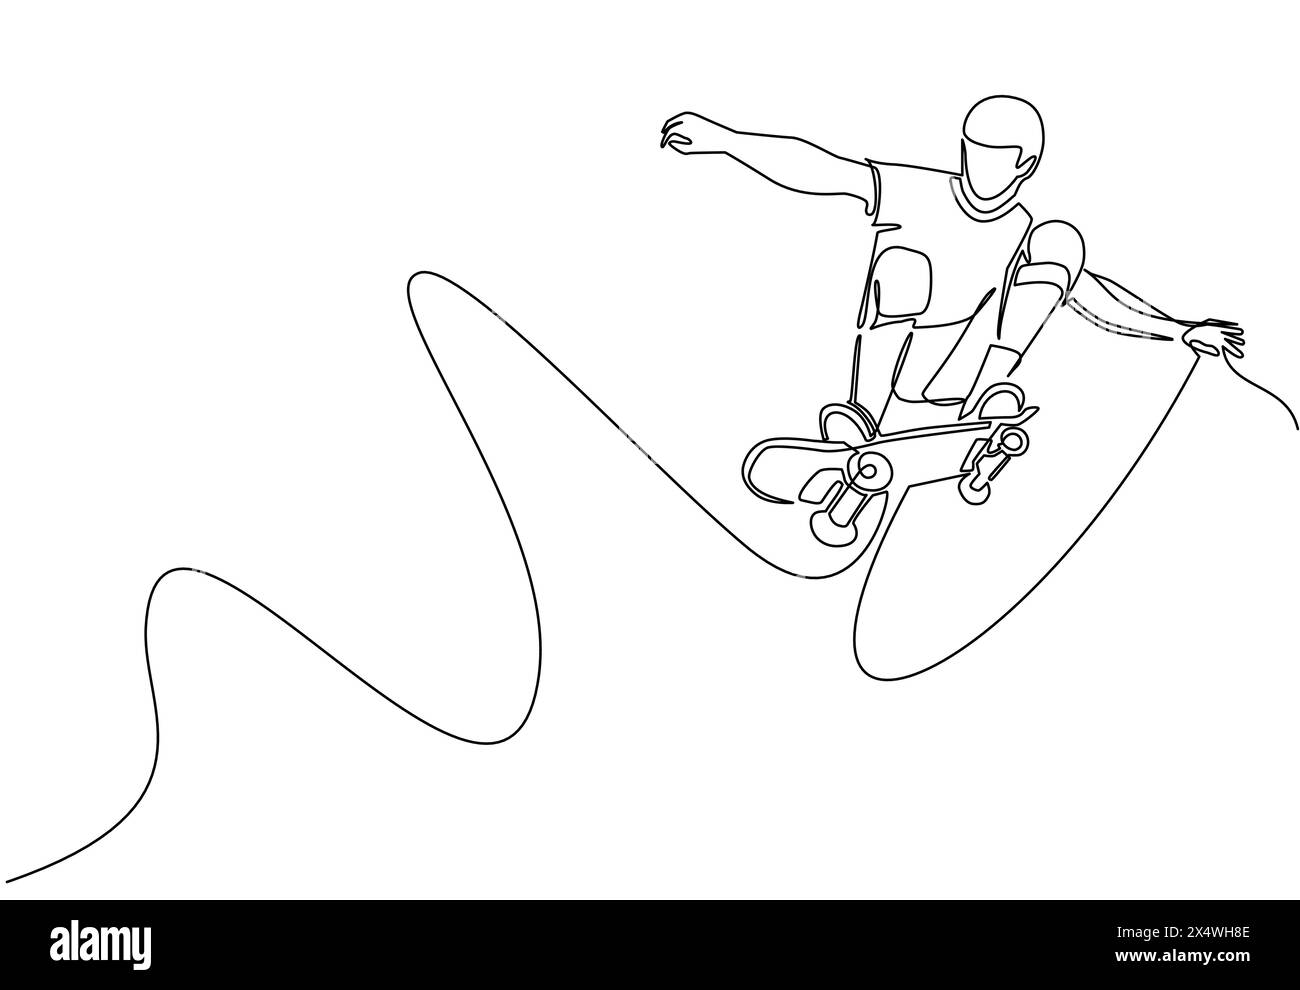 Simple une ligne dessinant jeune homme de skateboarder cool chevauchant le skateboard et faisant un tour de saut dans le skate Park. Sport extrême des adolescents. Une vie sportive saine Illustration de Vecteur